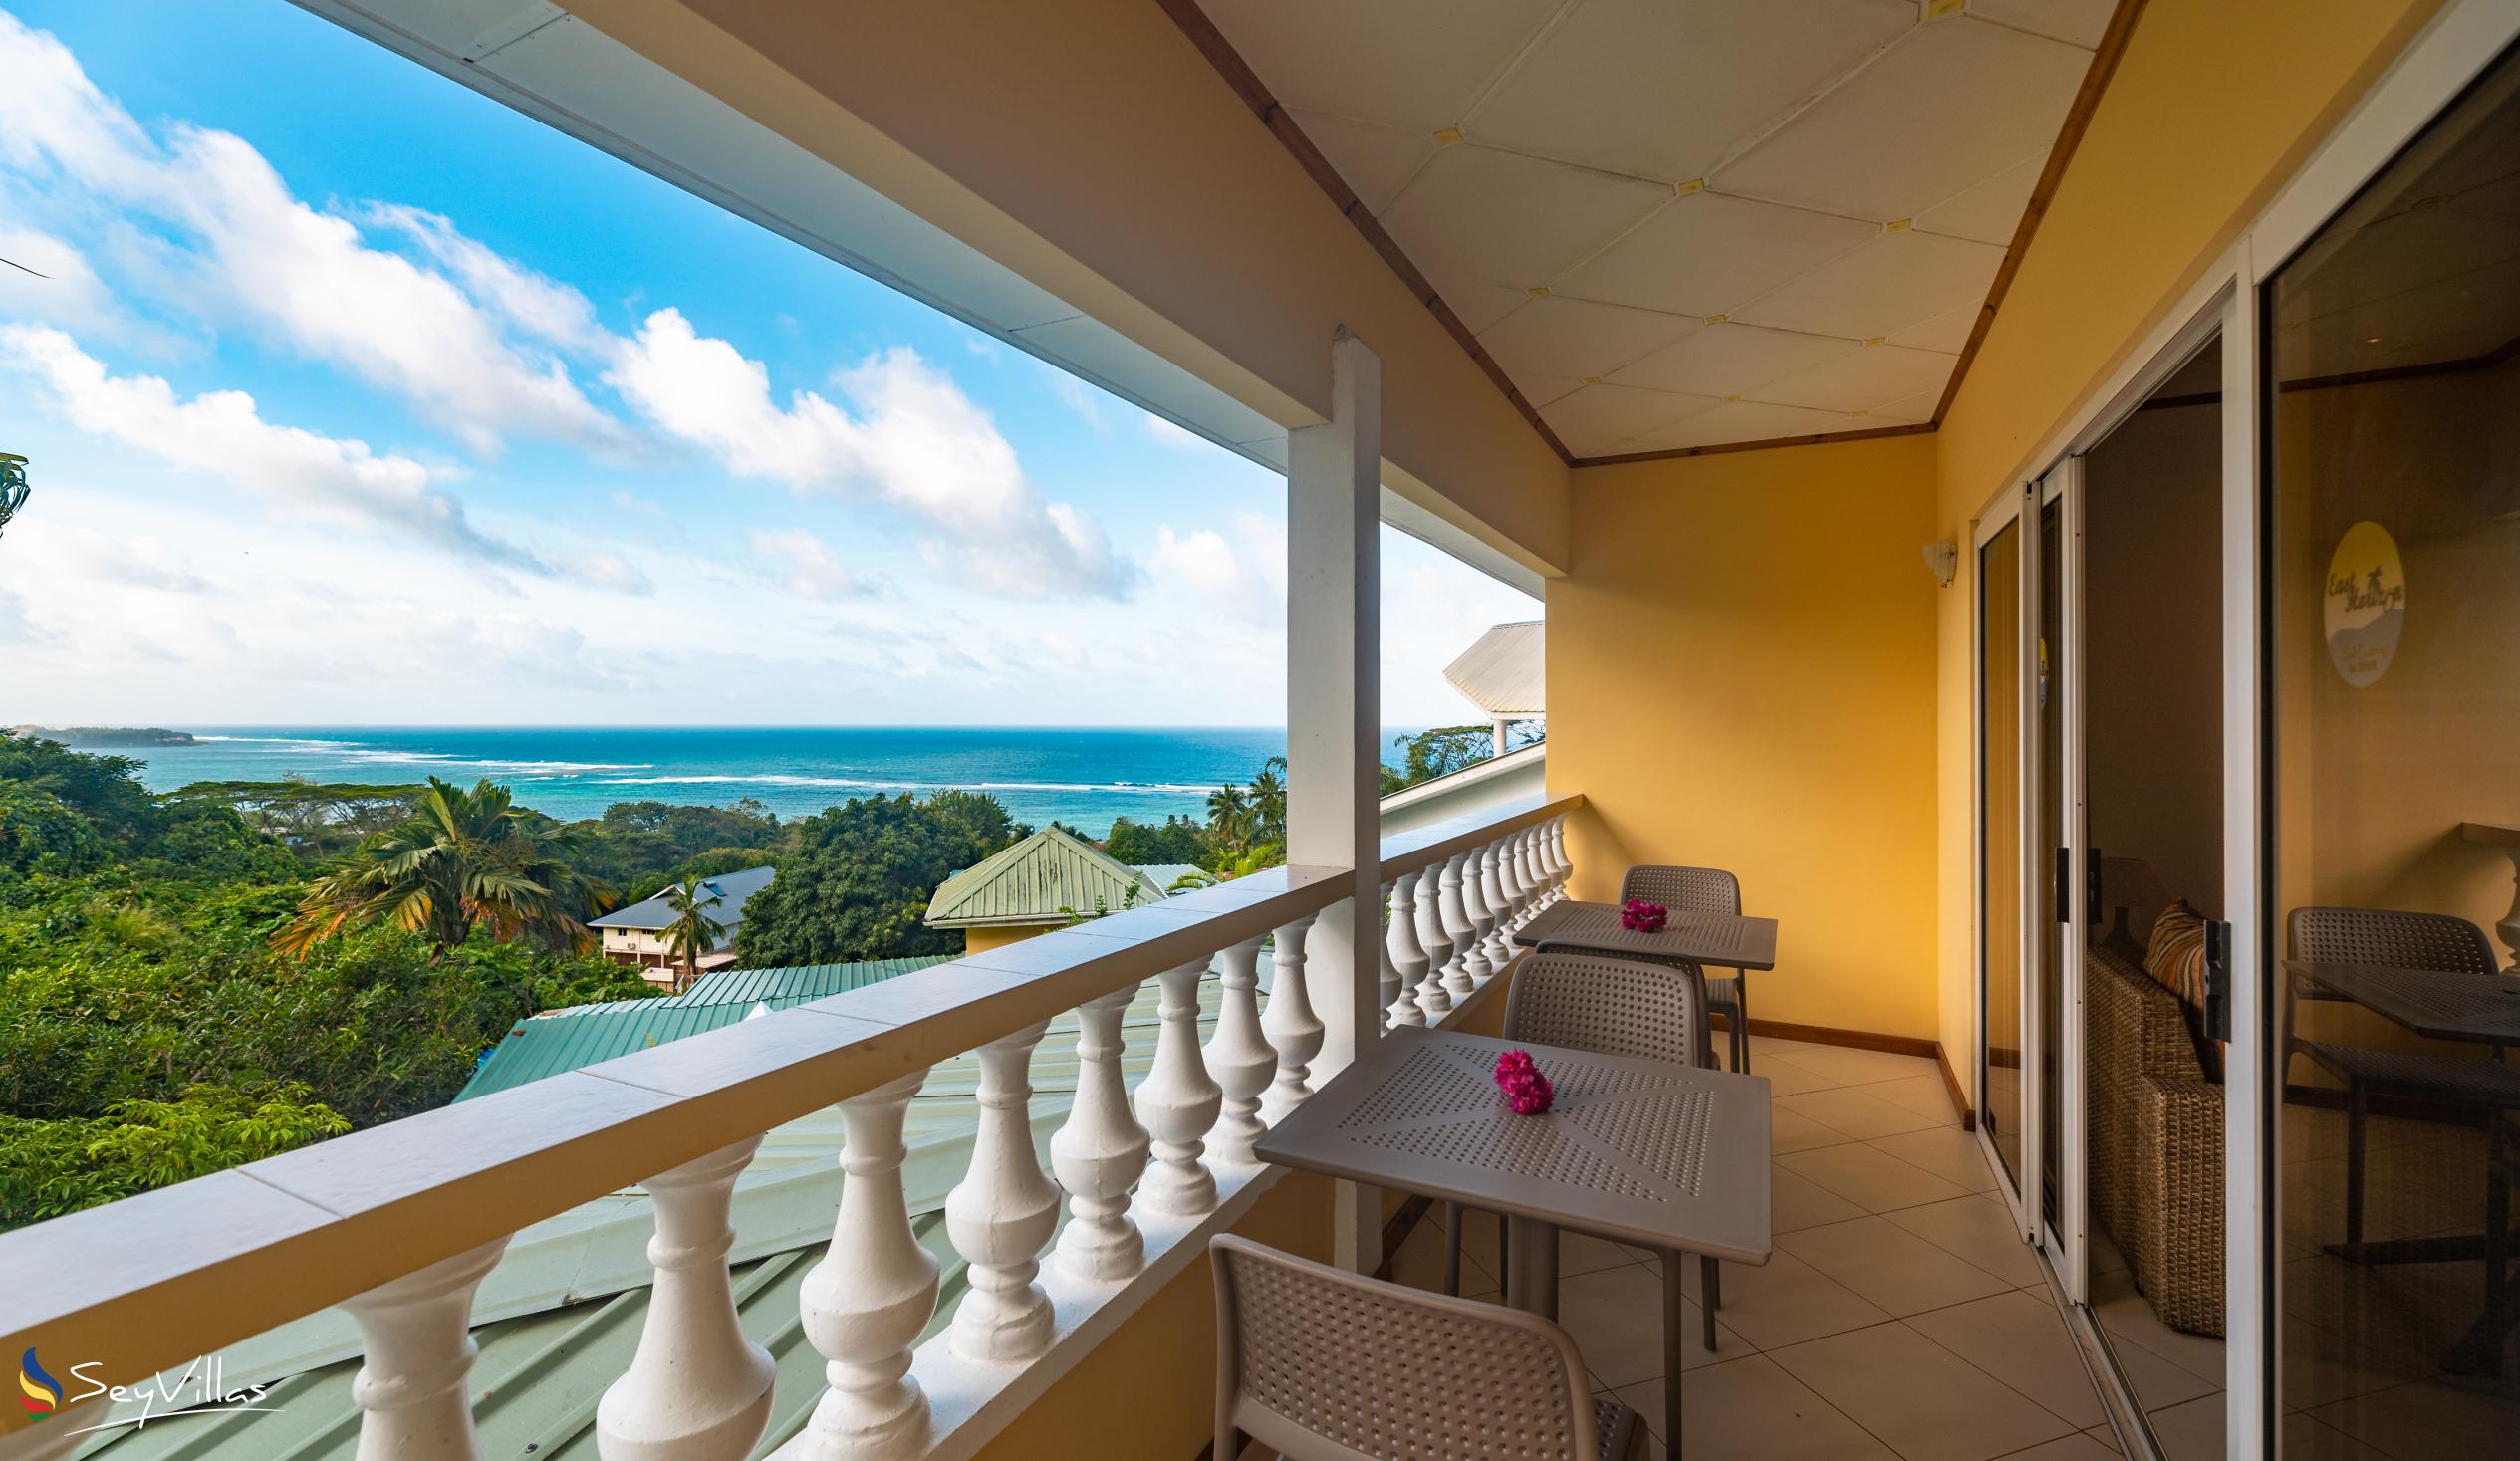 Foto 42: East Horizon - Appartement vue sur la mer - 2 chambres - Mahé (Seychelles)